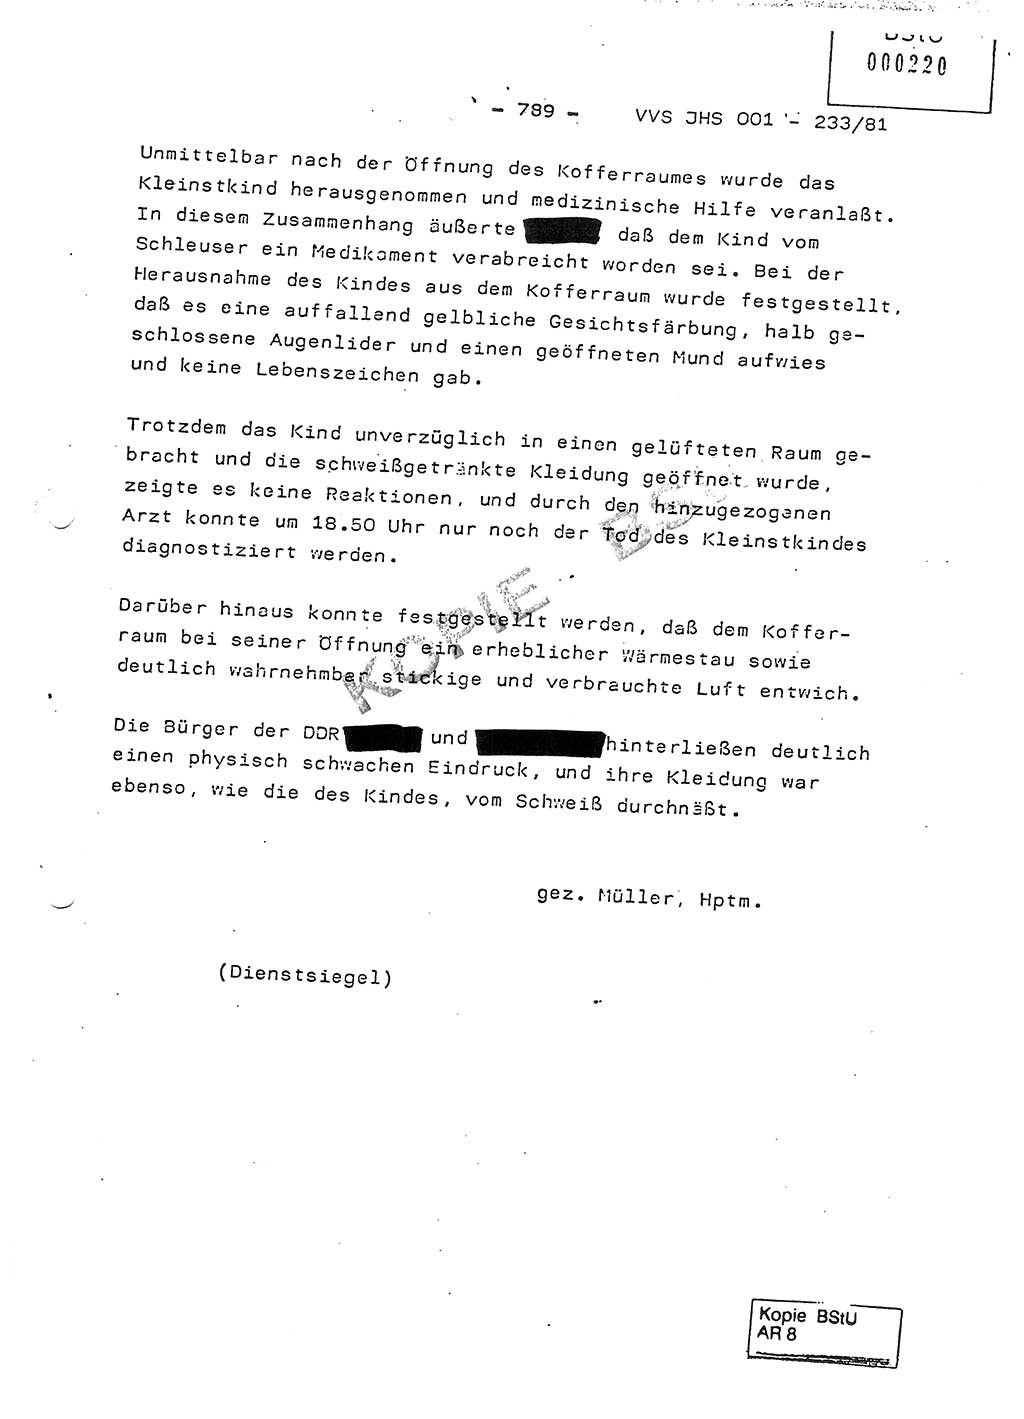 Dissertation Oberstleutnant Horst Zank (JHS), Oberstleutnant Dr. Karl-Heinz Knoblauch (JHS), Oberstleutnant Gustav-Adolf Kowalewski (HA Ⅸ), Oberstleutnant Wolfgang Plötner (HA Ⅸ), Ministerium für Staatssicherheit (MfS) [Deutsche Demokratische Republik (DDR)], Juristische Hochschule (JHS), Vertrauliche Verschlußsache (VVS) o001-233/81, Potsdam 1981, Blatt 789 (Diss. MfS DDR JHS VVS o001-233/81 1981, Bl. 789)